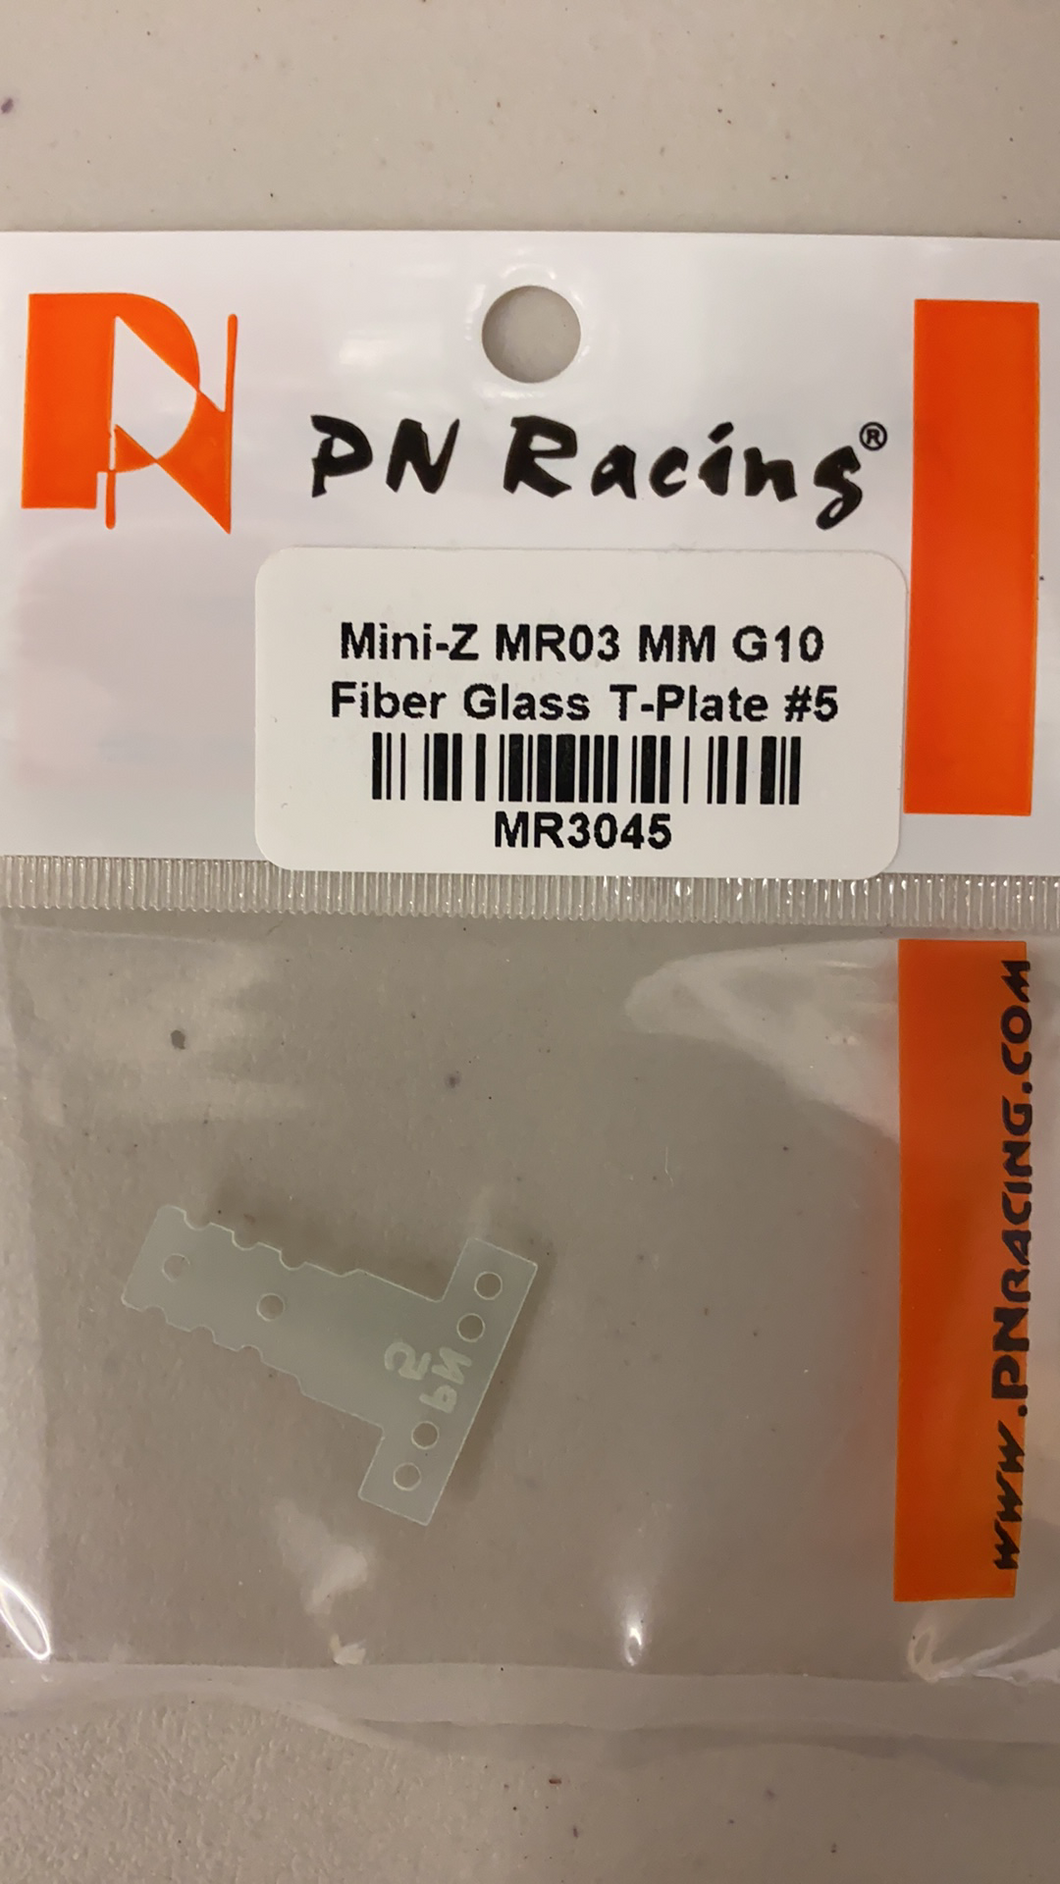 MR3045 PN Racing Mini-Z MR03 MM G10 Fiber Glass T-Plate #5